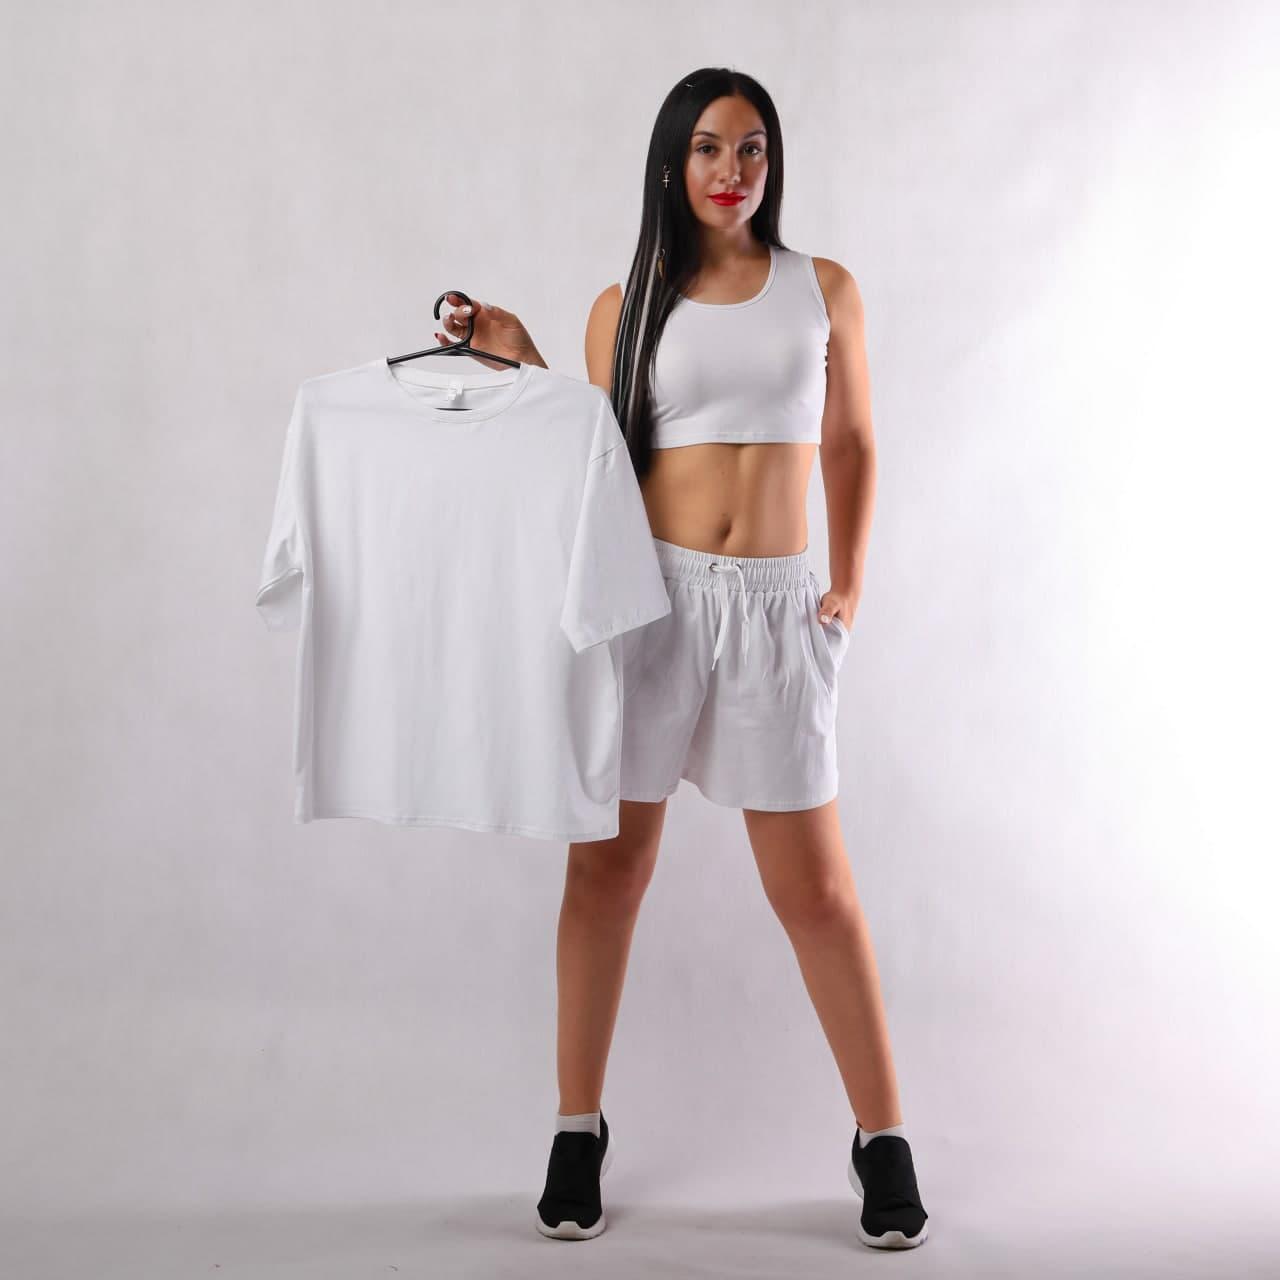 Літній жіночий костюм футболка+топ з шортами Стиль OVERSIZE (42 -54р.) (50-54 тільки білий кольор)!